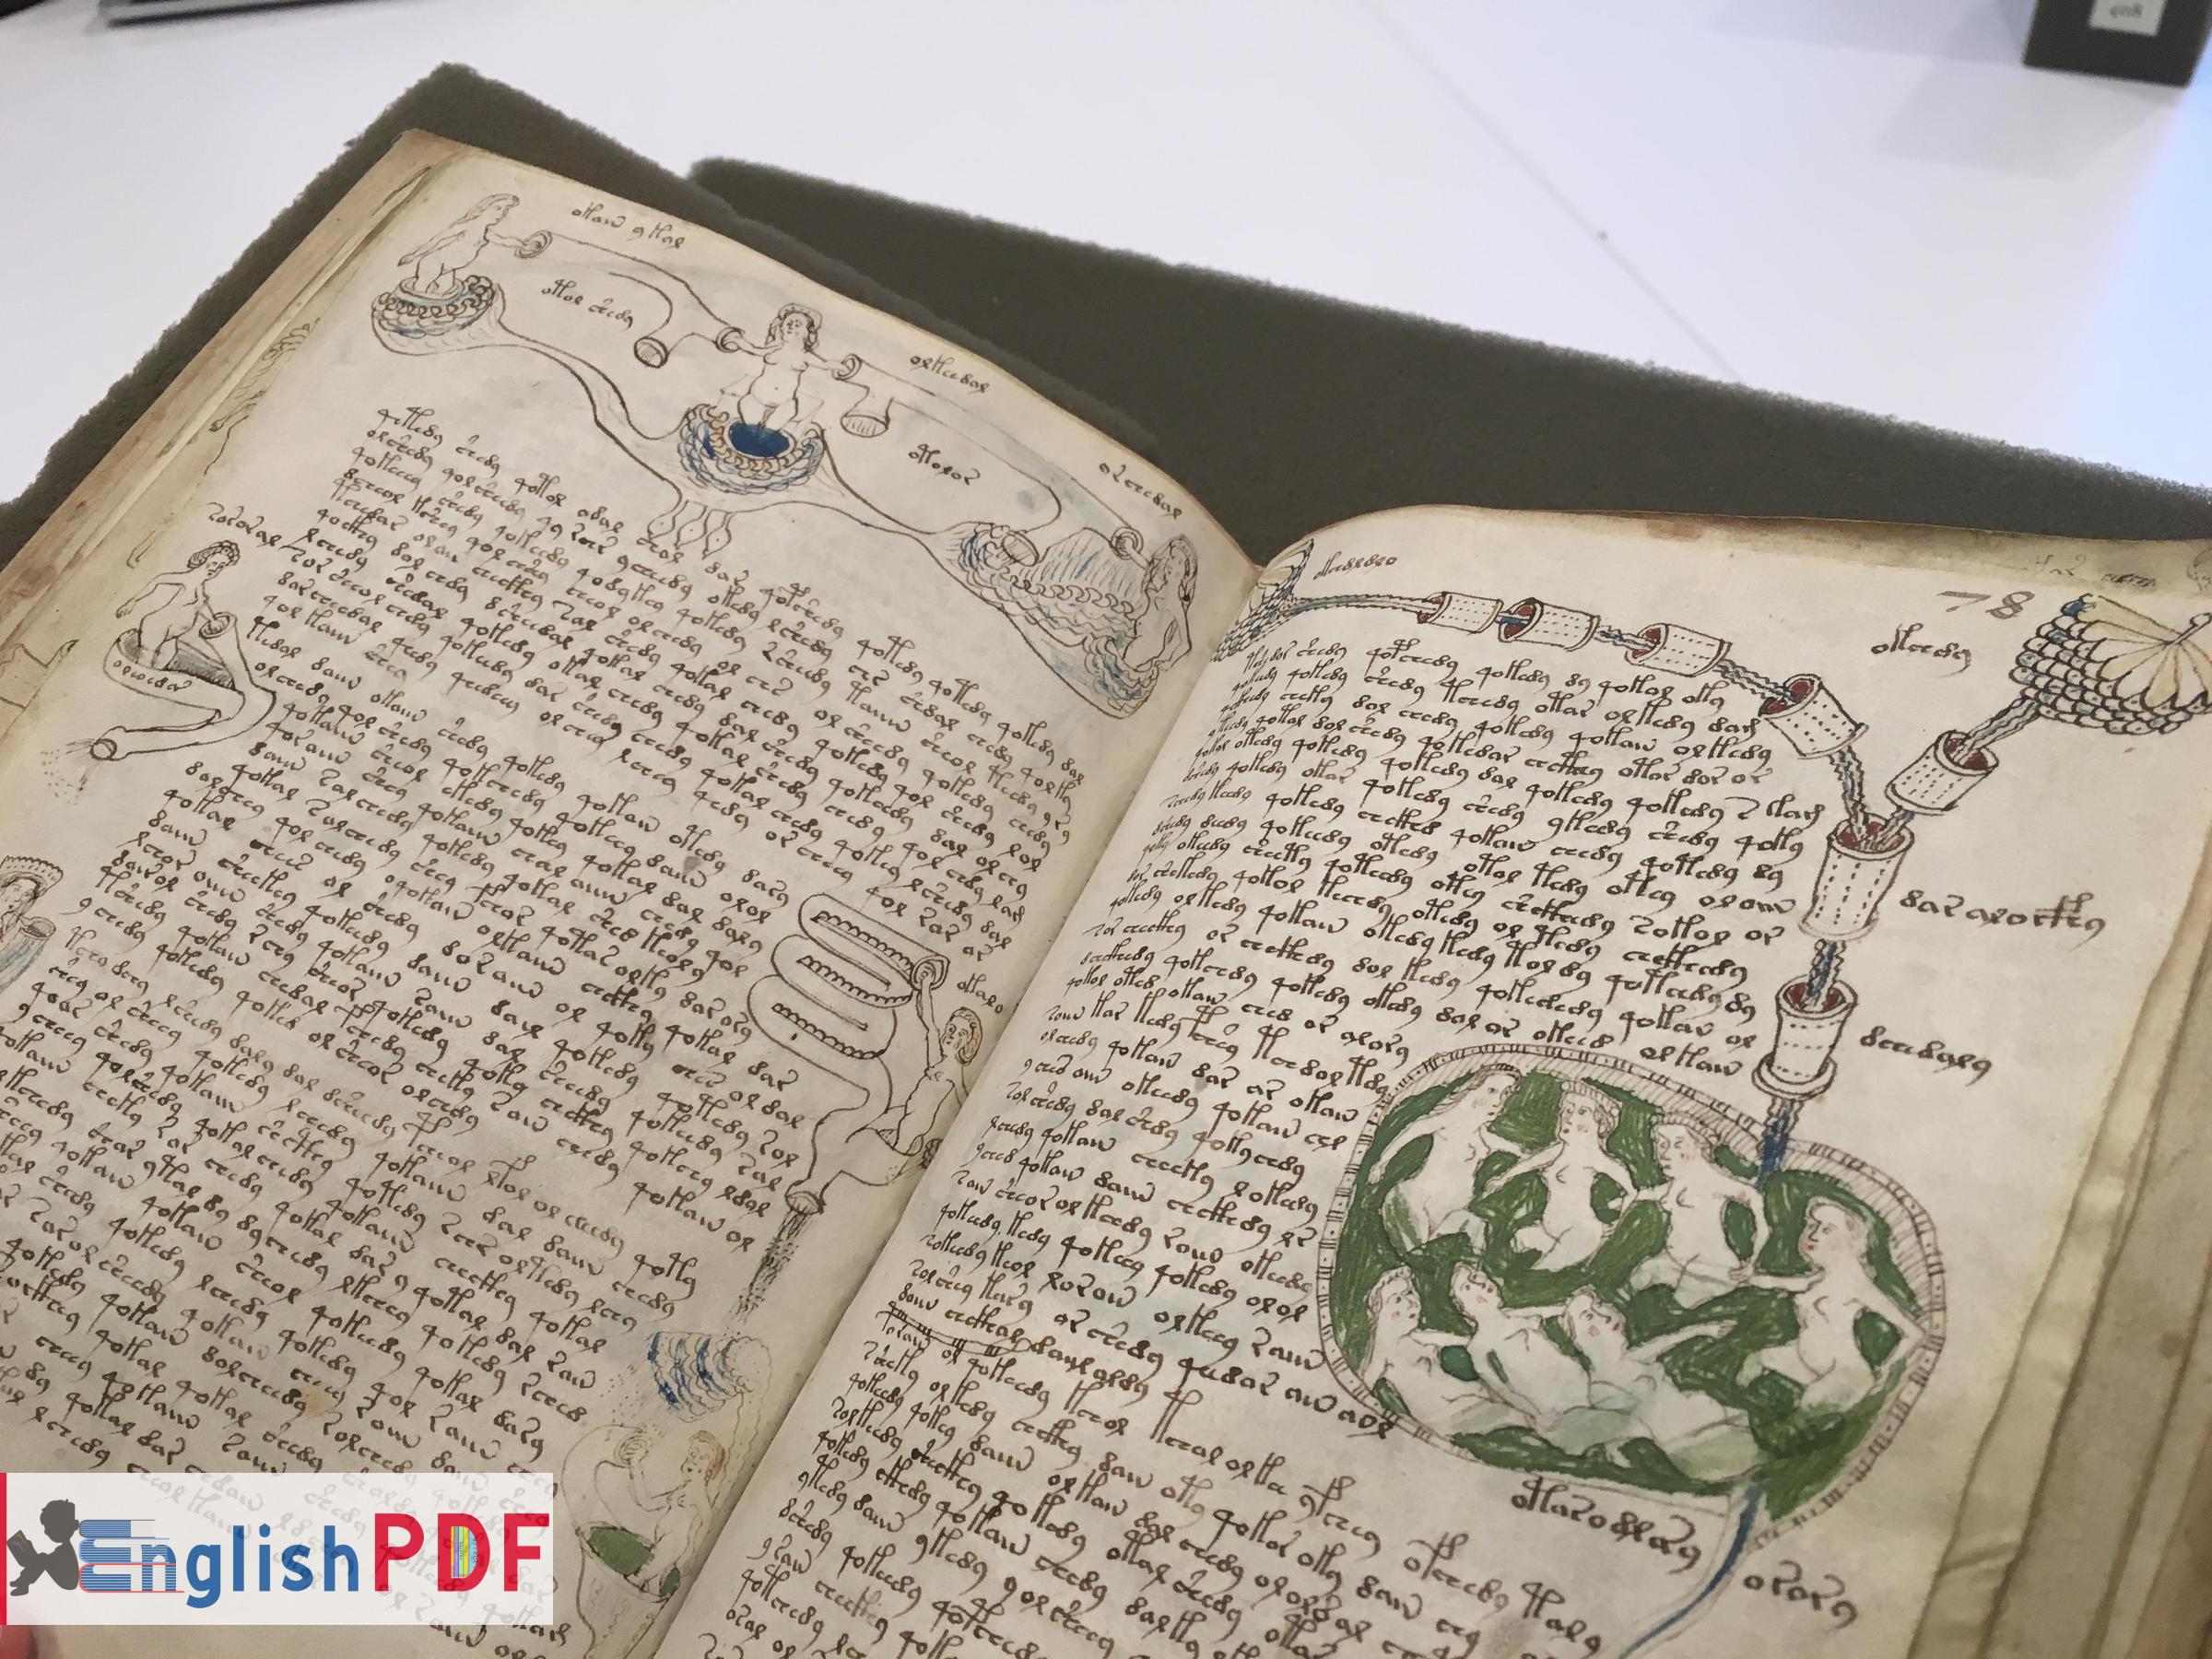 The Voynich Manuscript01